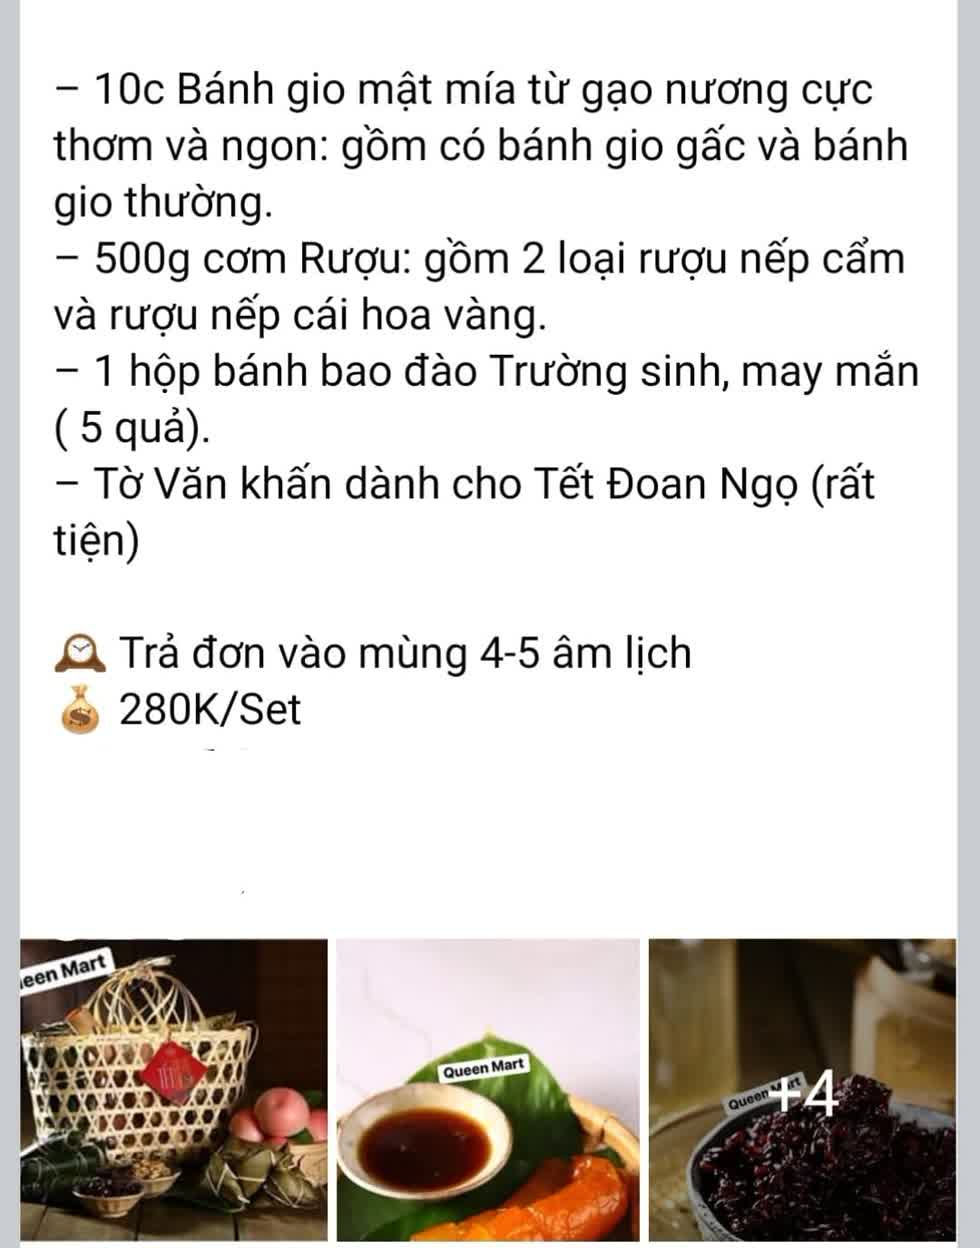 Các tài khoản cá nhân rao bán đồ cúng cho dịp Tết Đoan Ngọ khá sôi động trên facebook. 